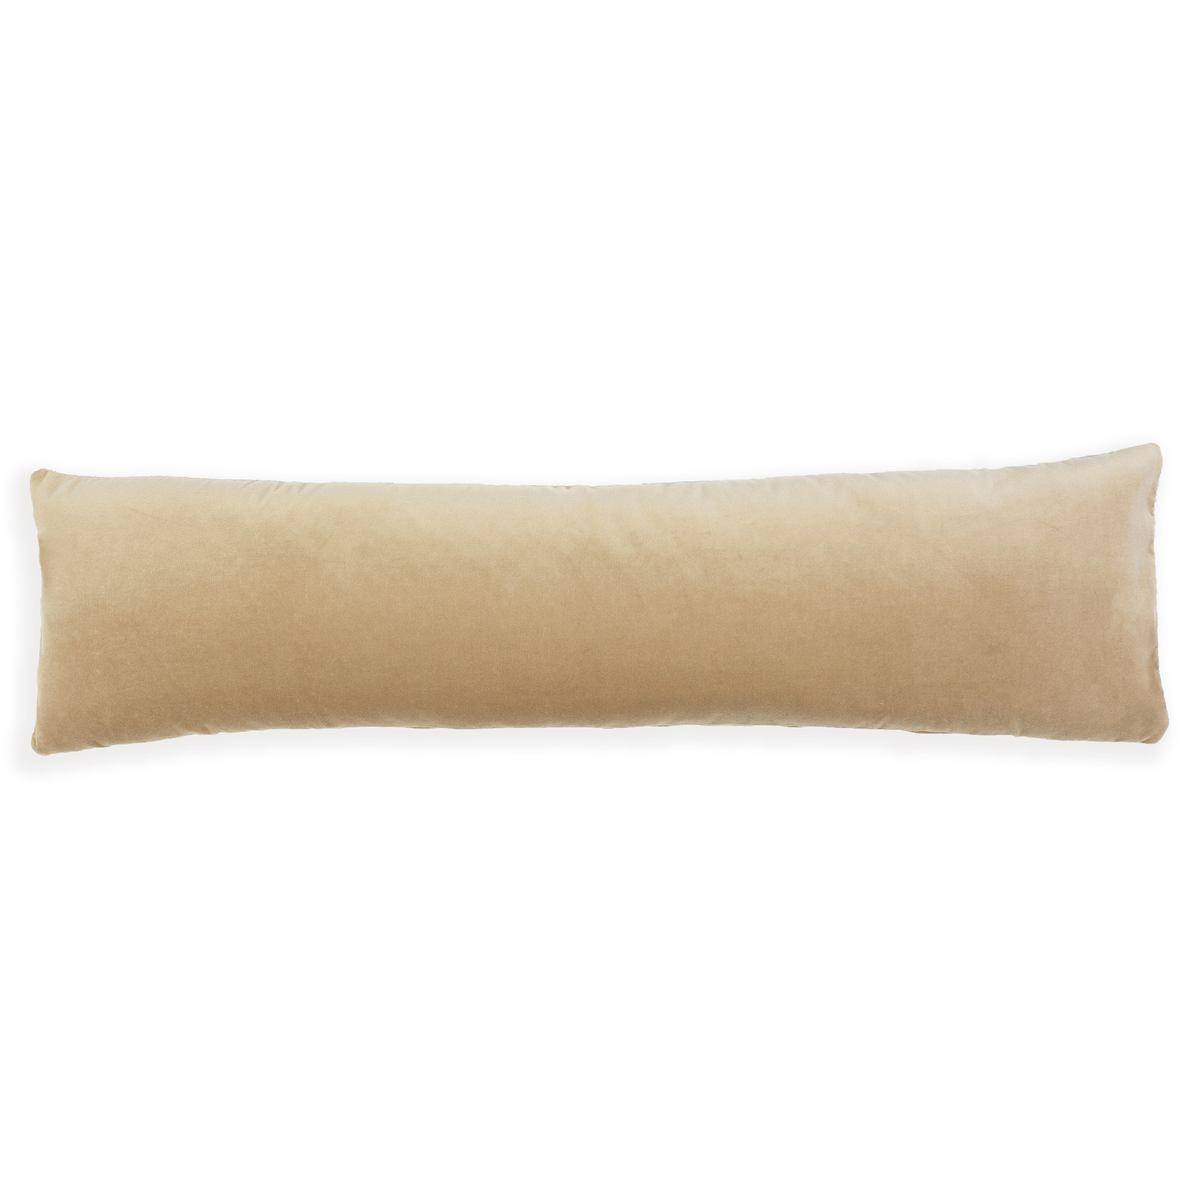 S|H Fawn Velvet Lumbar Pillow Cover – Stoffer Home